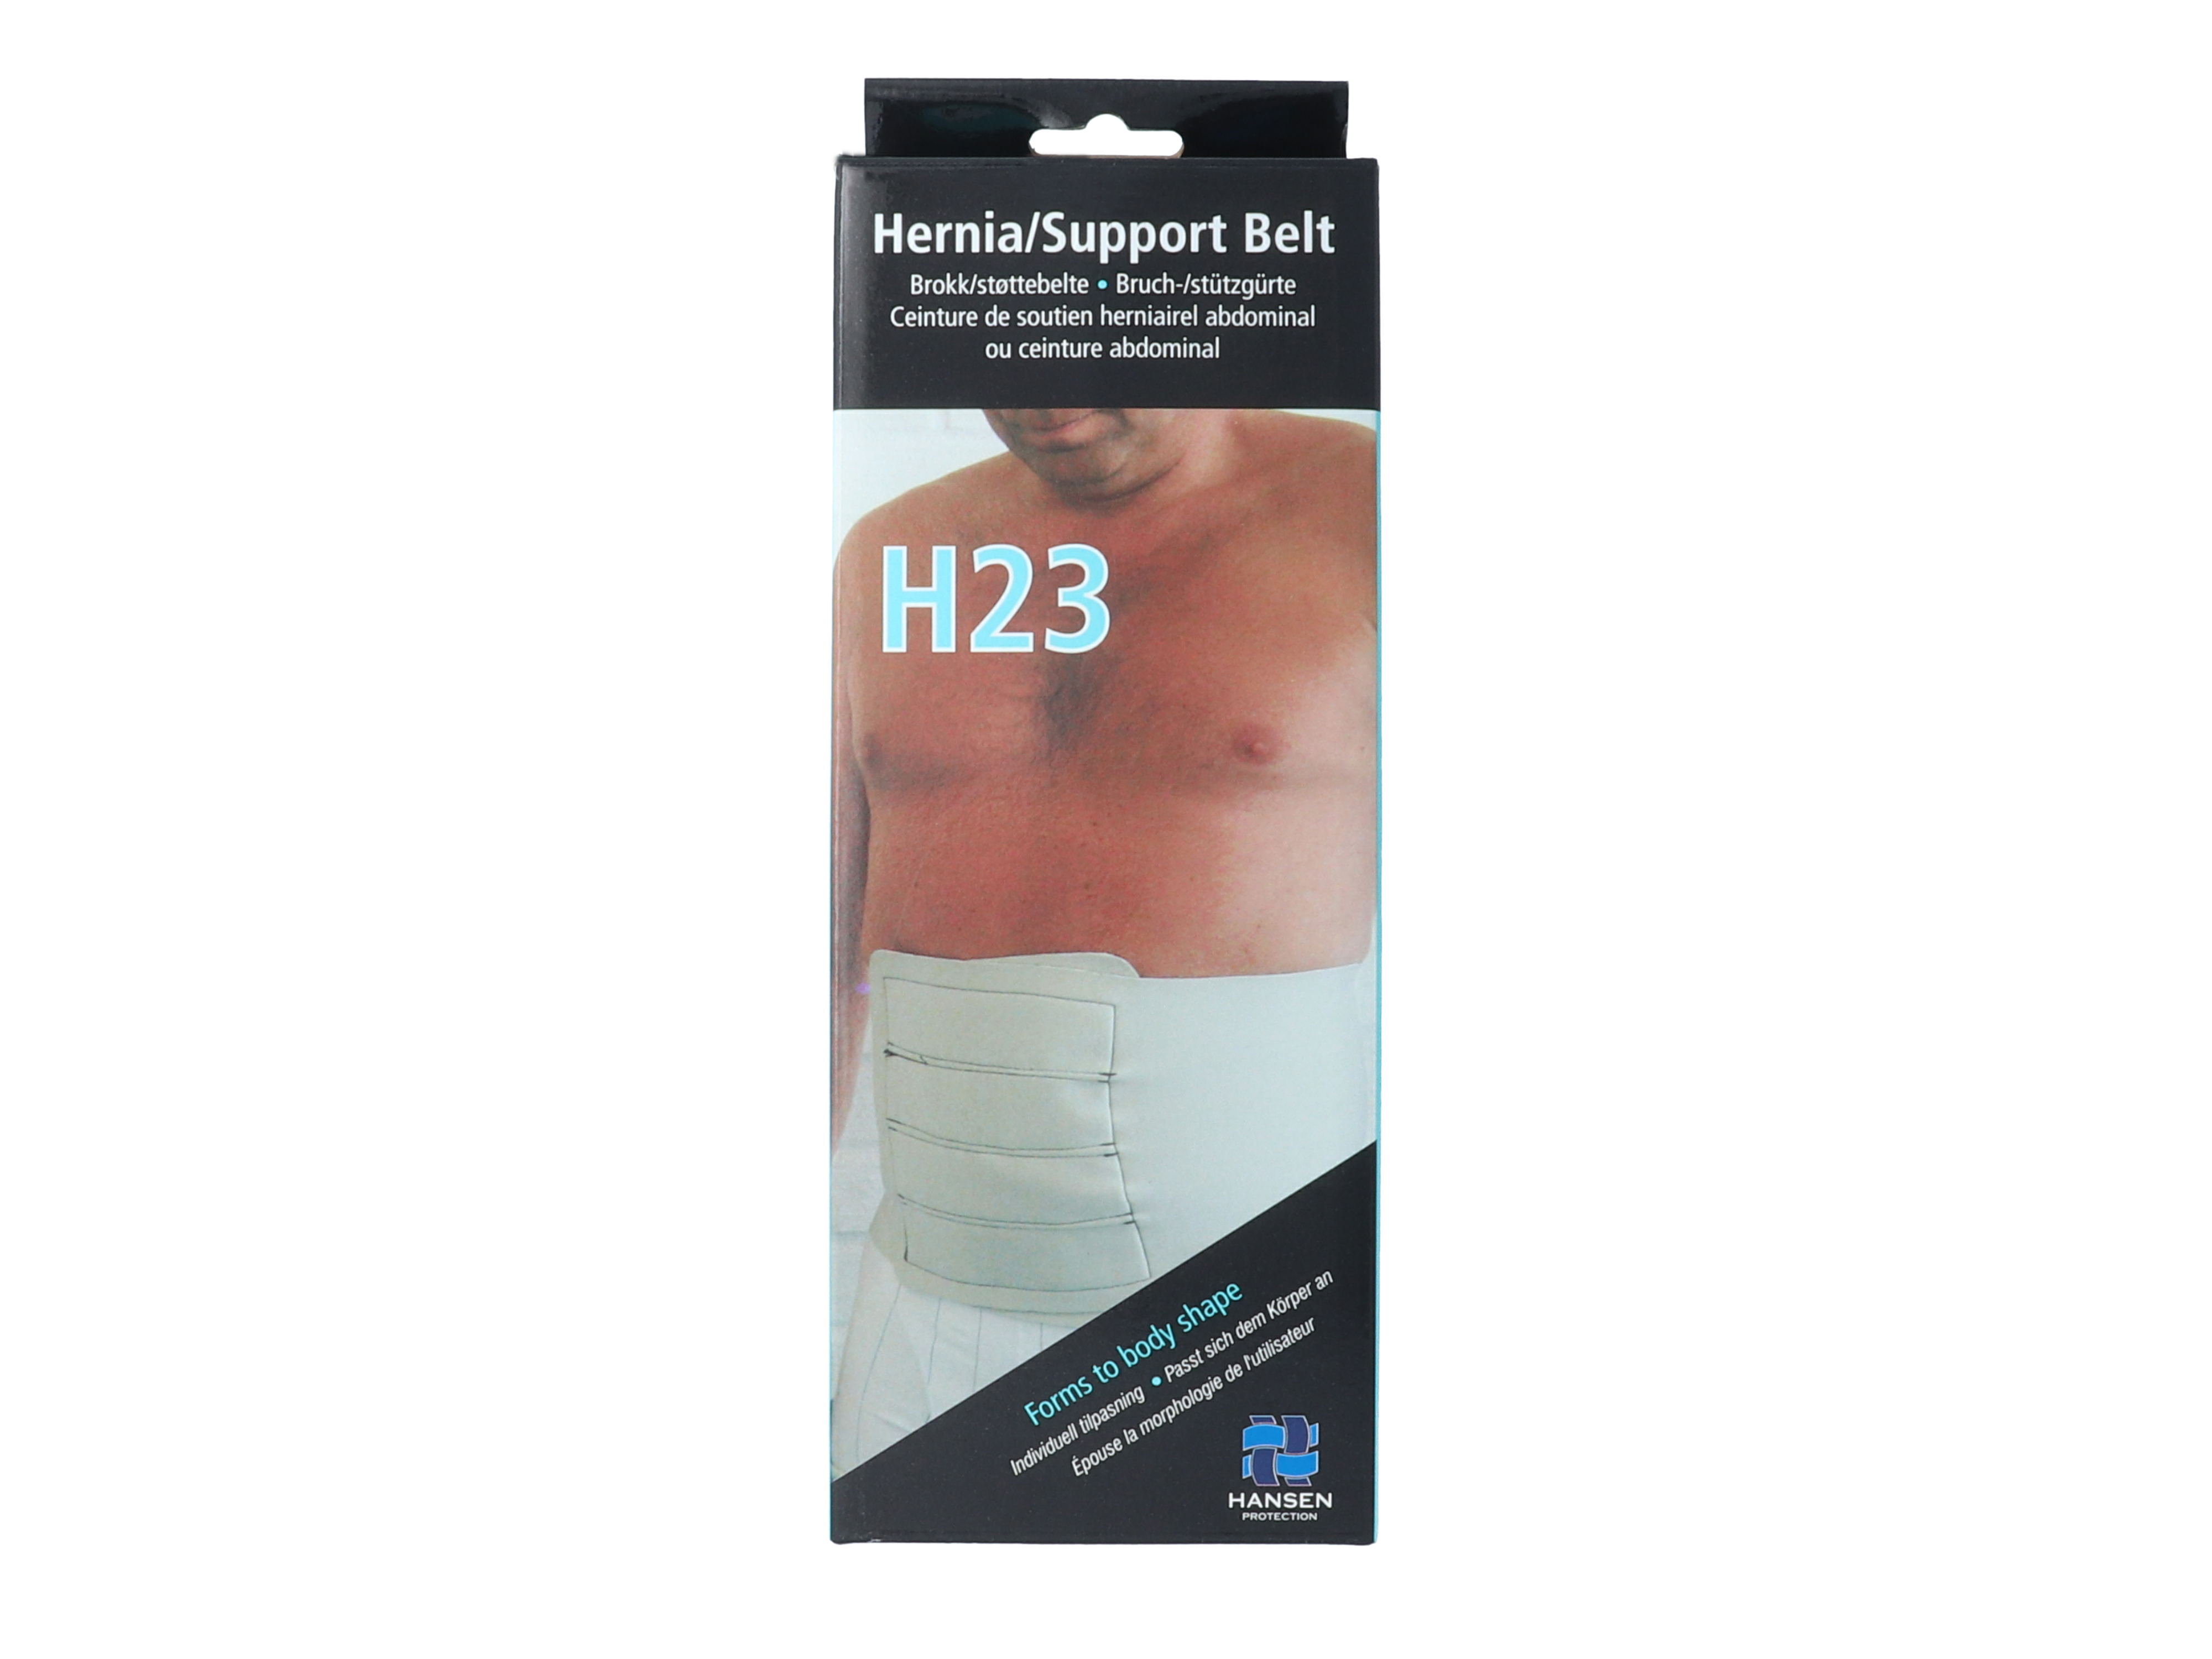 Hansen Protection HH Brokk/støttebelte H23, str XXXL, omkrets 130 cm, 1 stk.